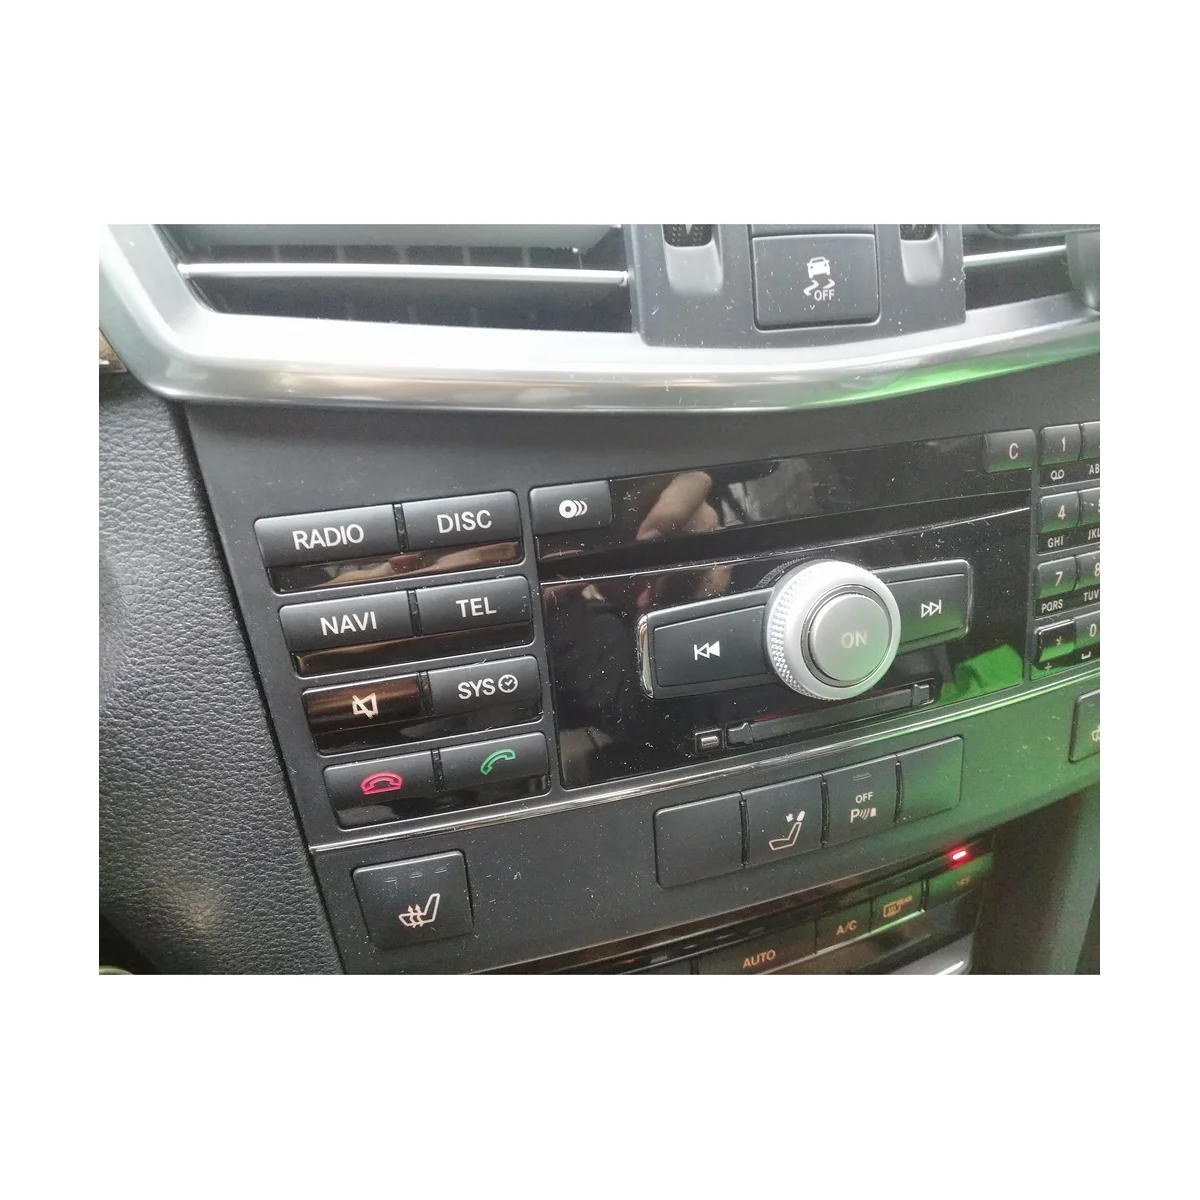 Car Center Console CD Мультимедийная кнопка Крышка рамки Наклейка для Mercedes Benz E Class W212 2010-2011 (серебристый) - 2